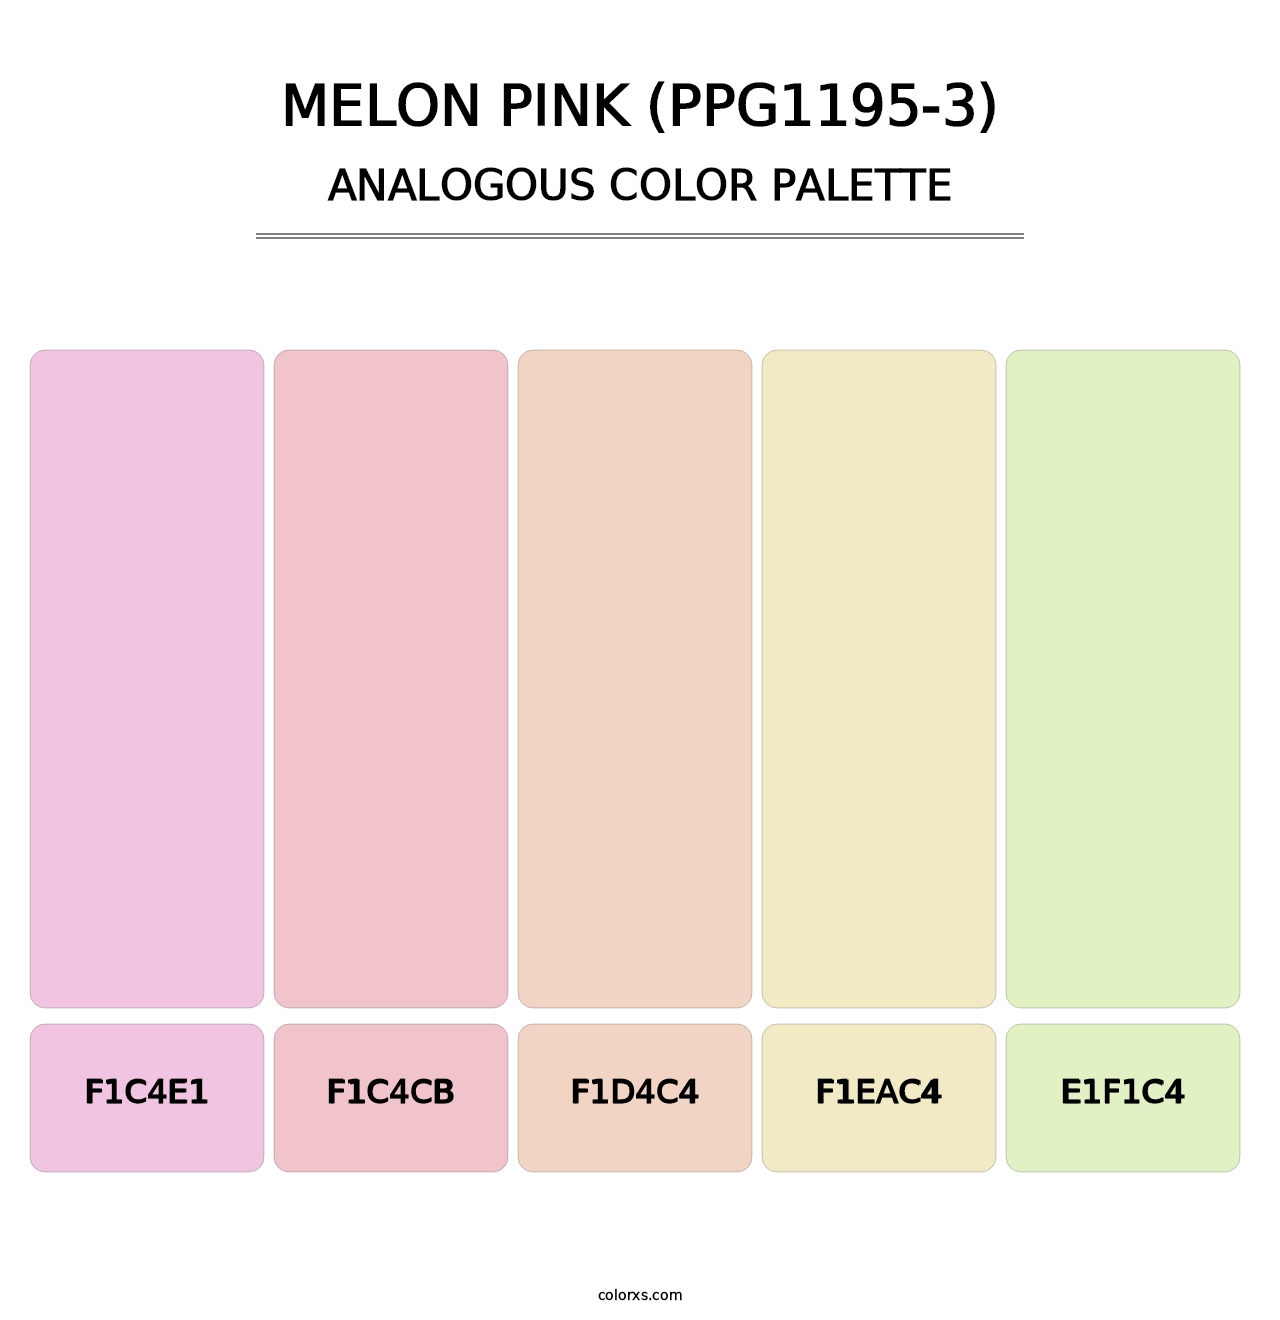 Melon Pink (PPG1195-3) - Analogous Color Palette